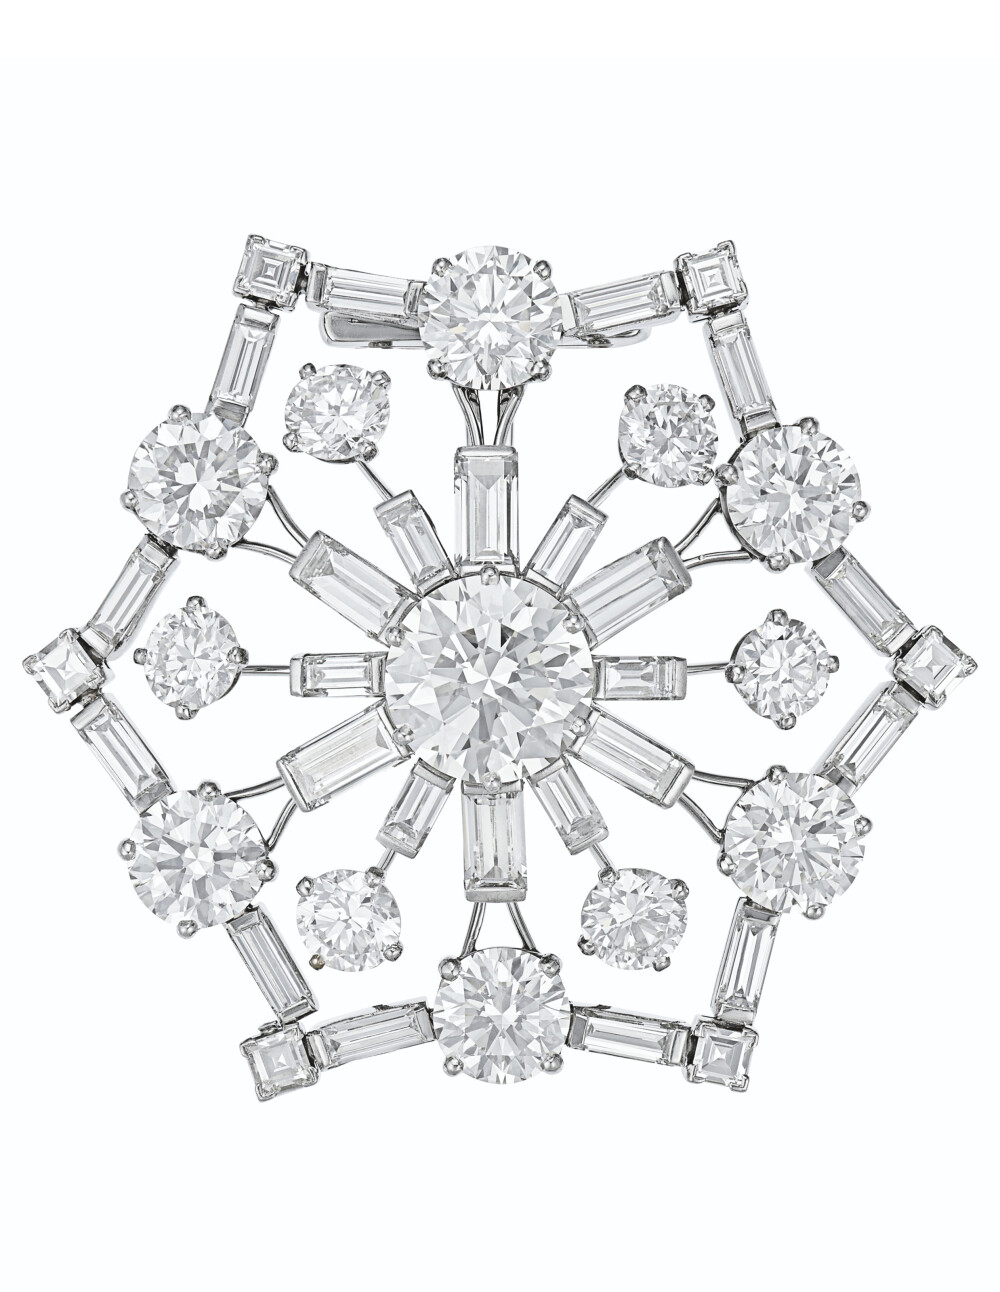 Oscar Heyman 钻石手镯 约1956年 镶嵌圆形、长方形和方形钻石，铂金，中央面板可拆卸转换为胸针，直径6.5厘米。成交价8.125万美元